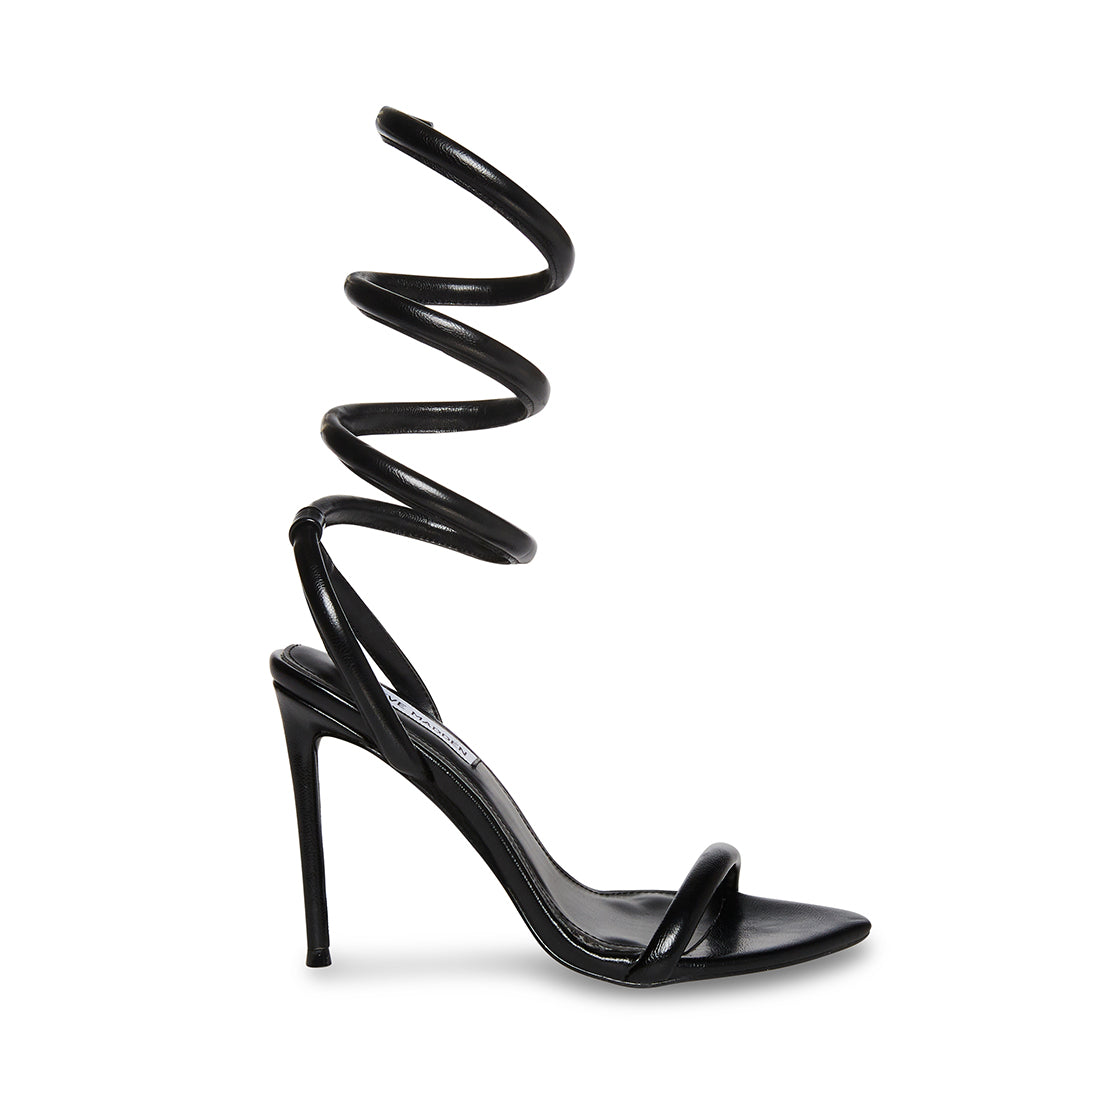 Black Stiletto Heels | Women's High Heels Madden